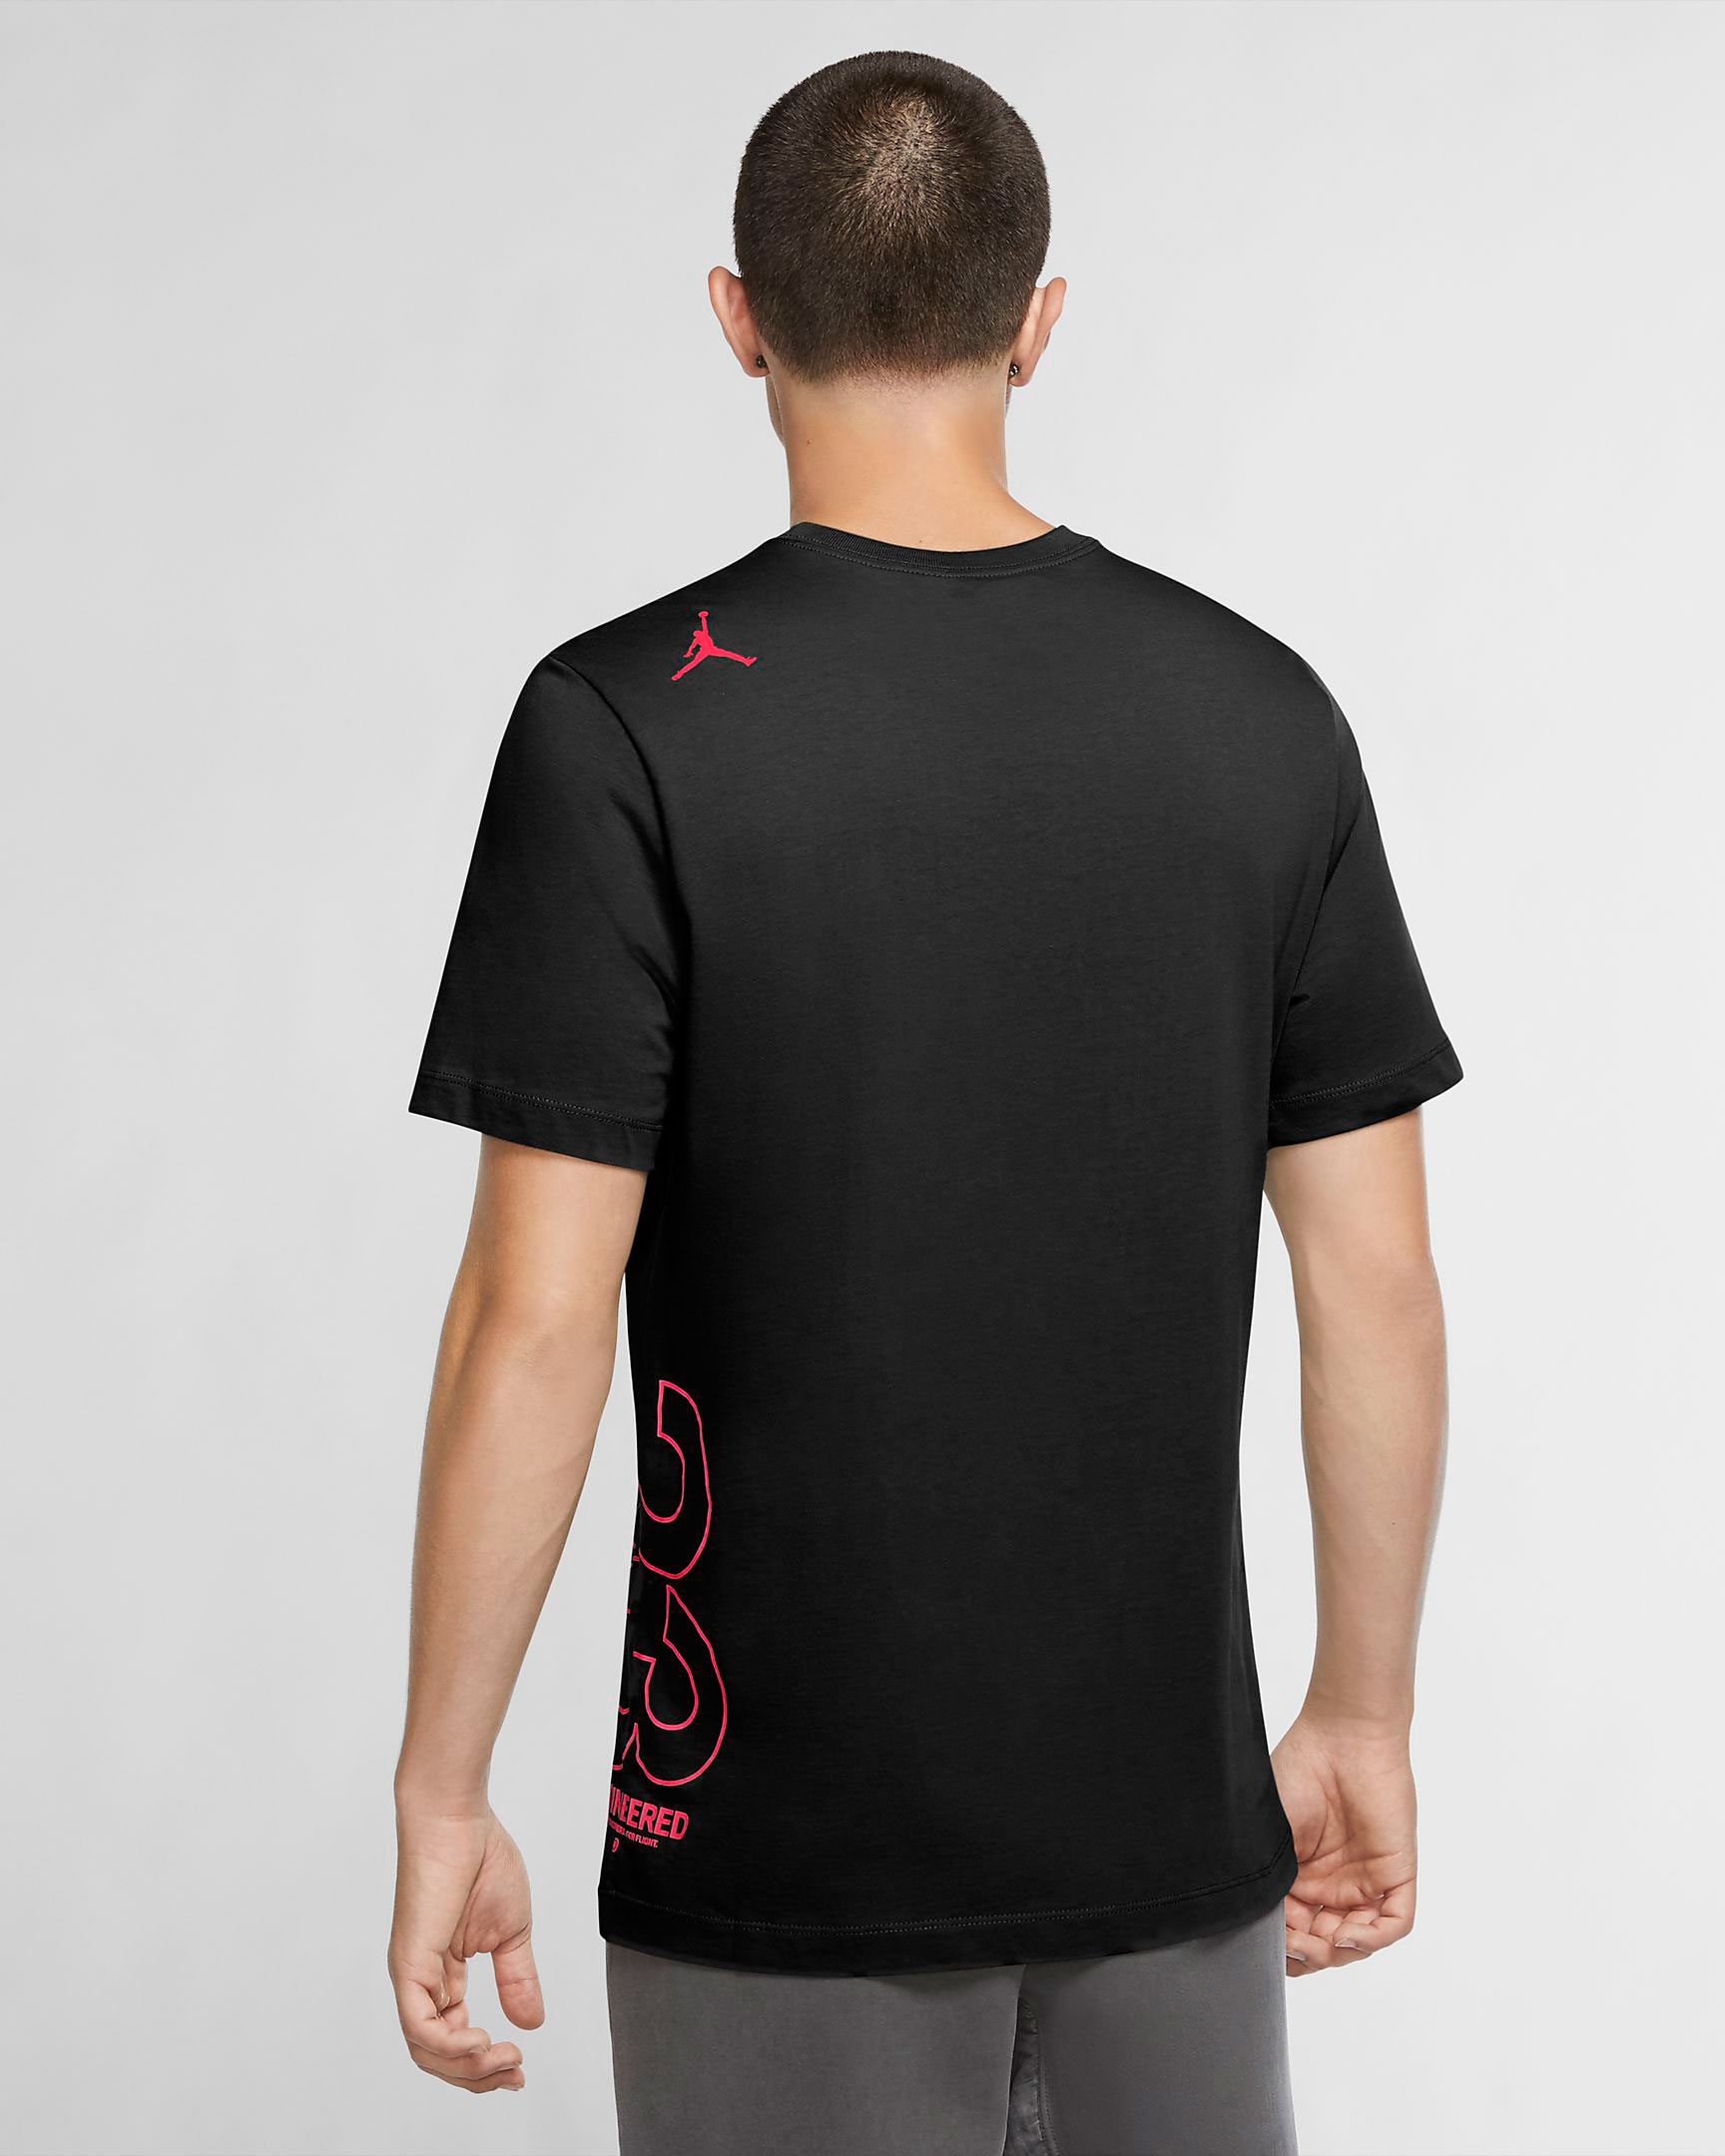 jordan-23-engineered-shirt-black-infrared-2